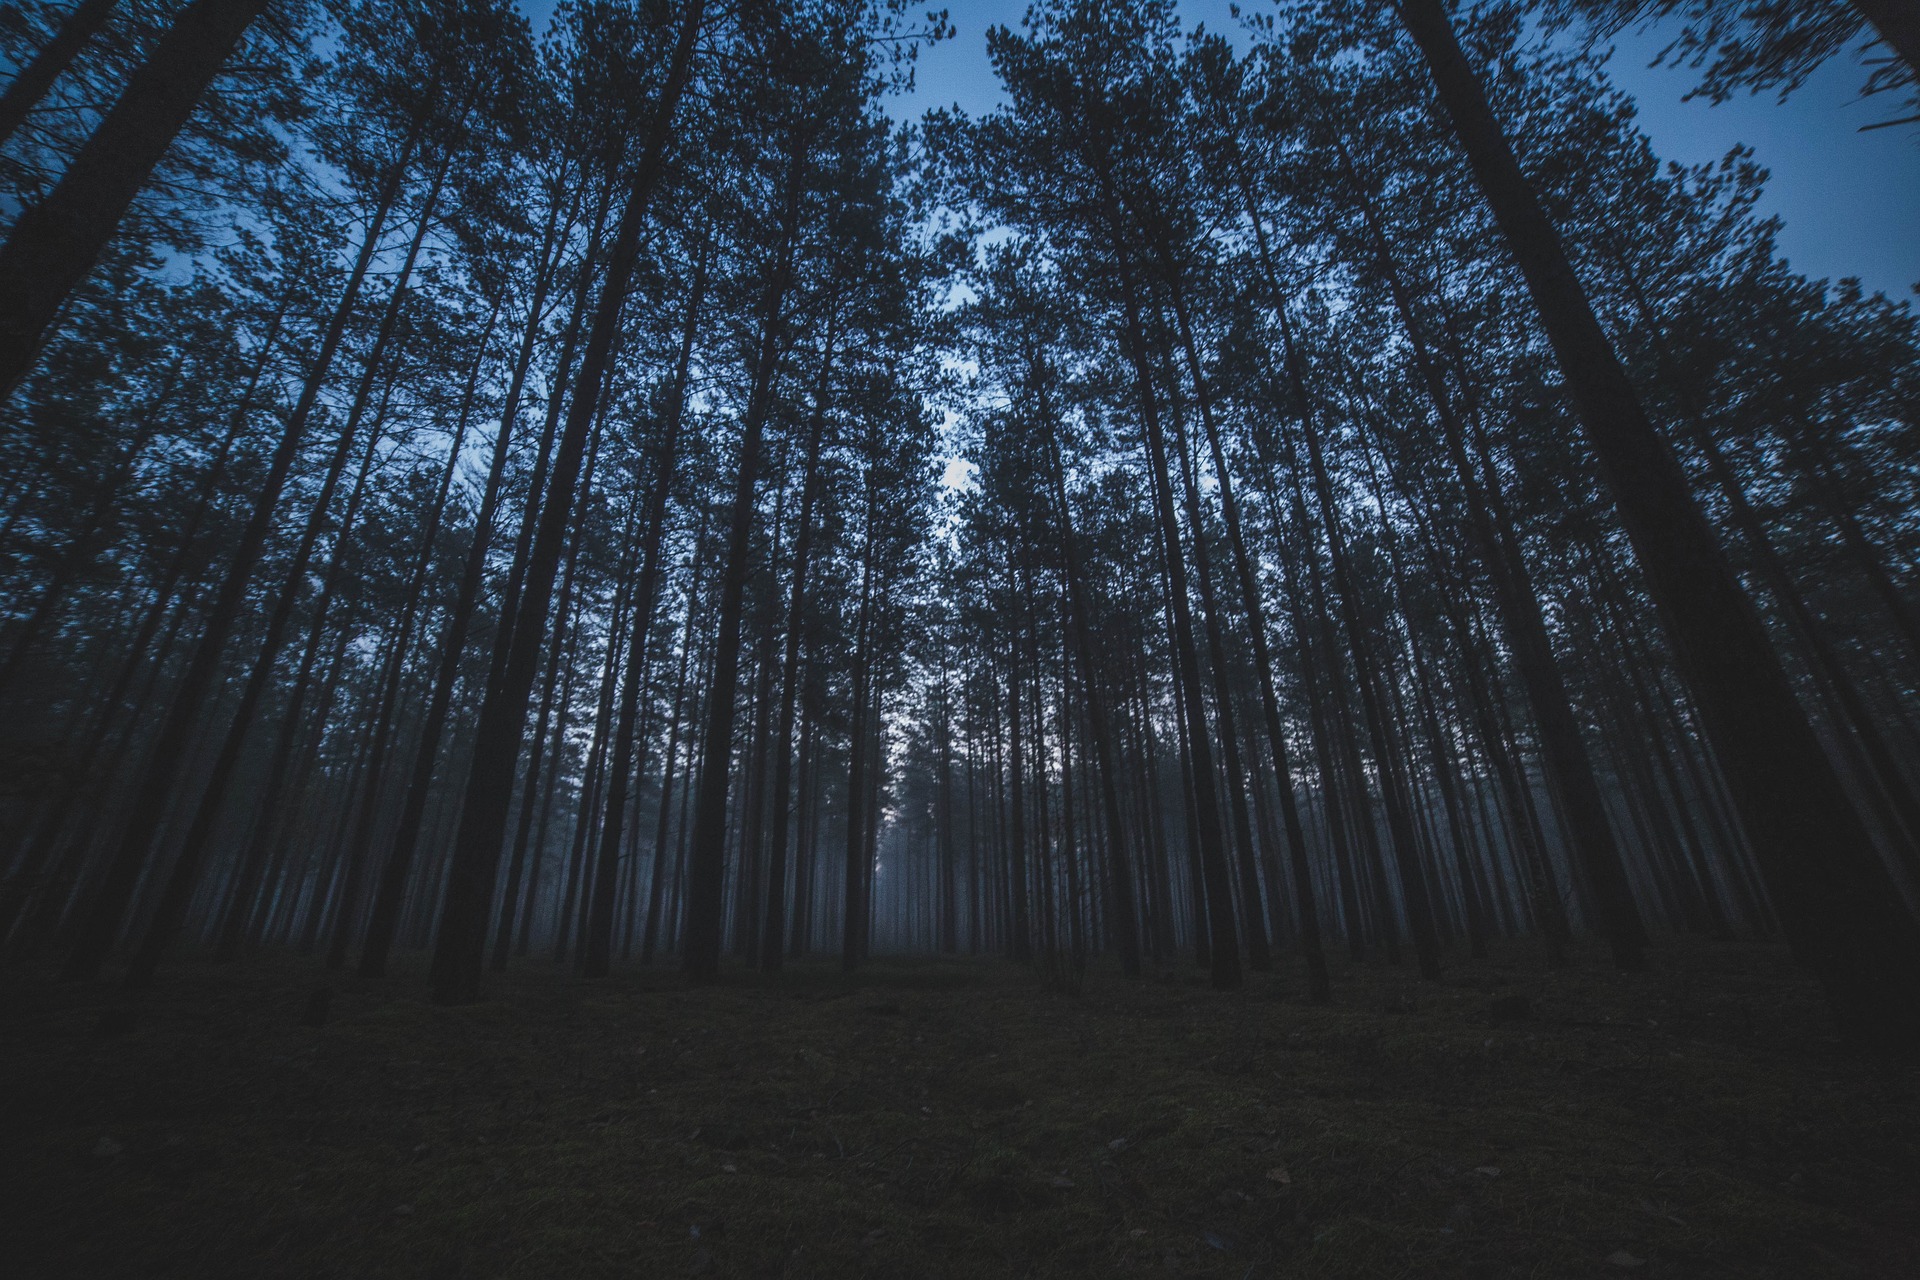 A dark pine forest.